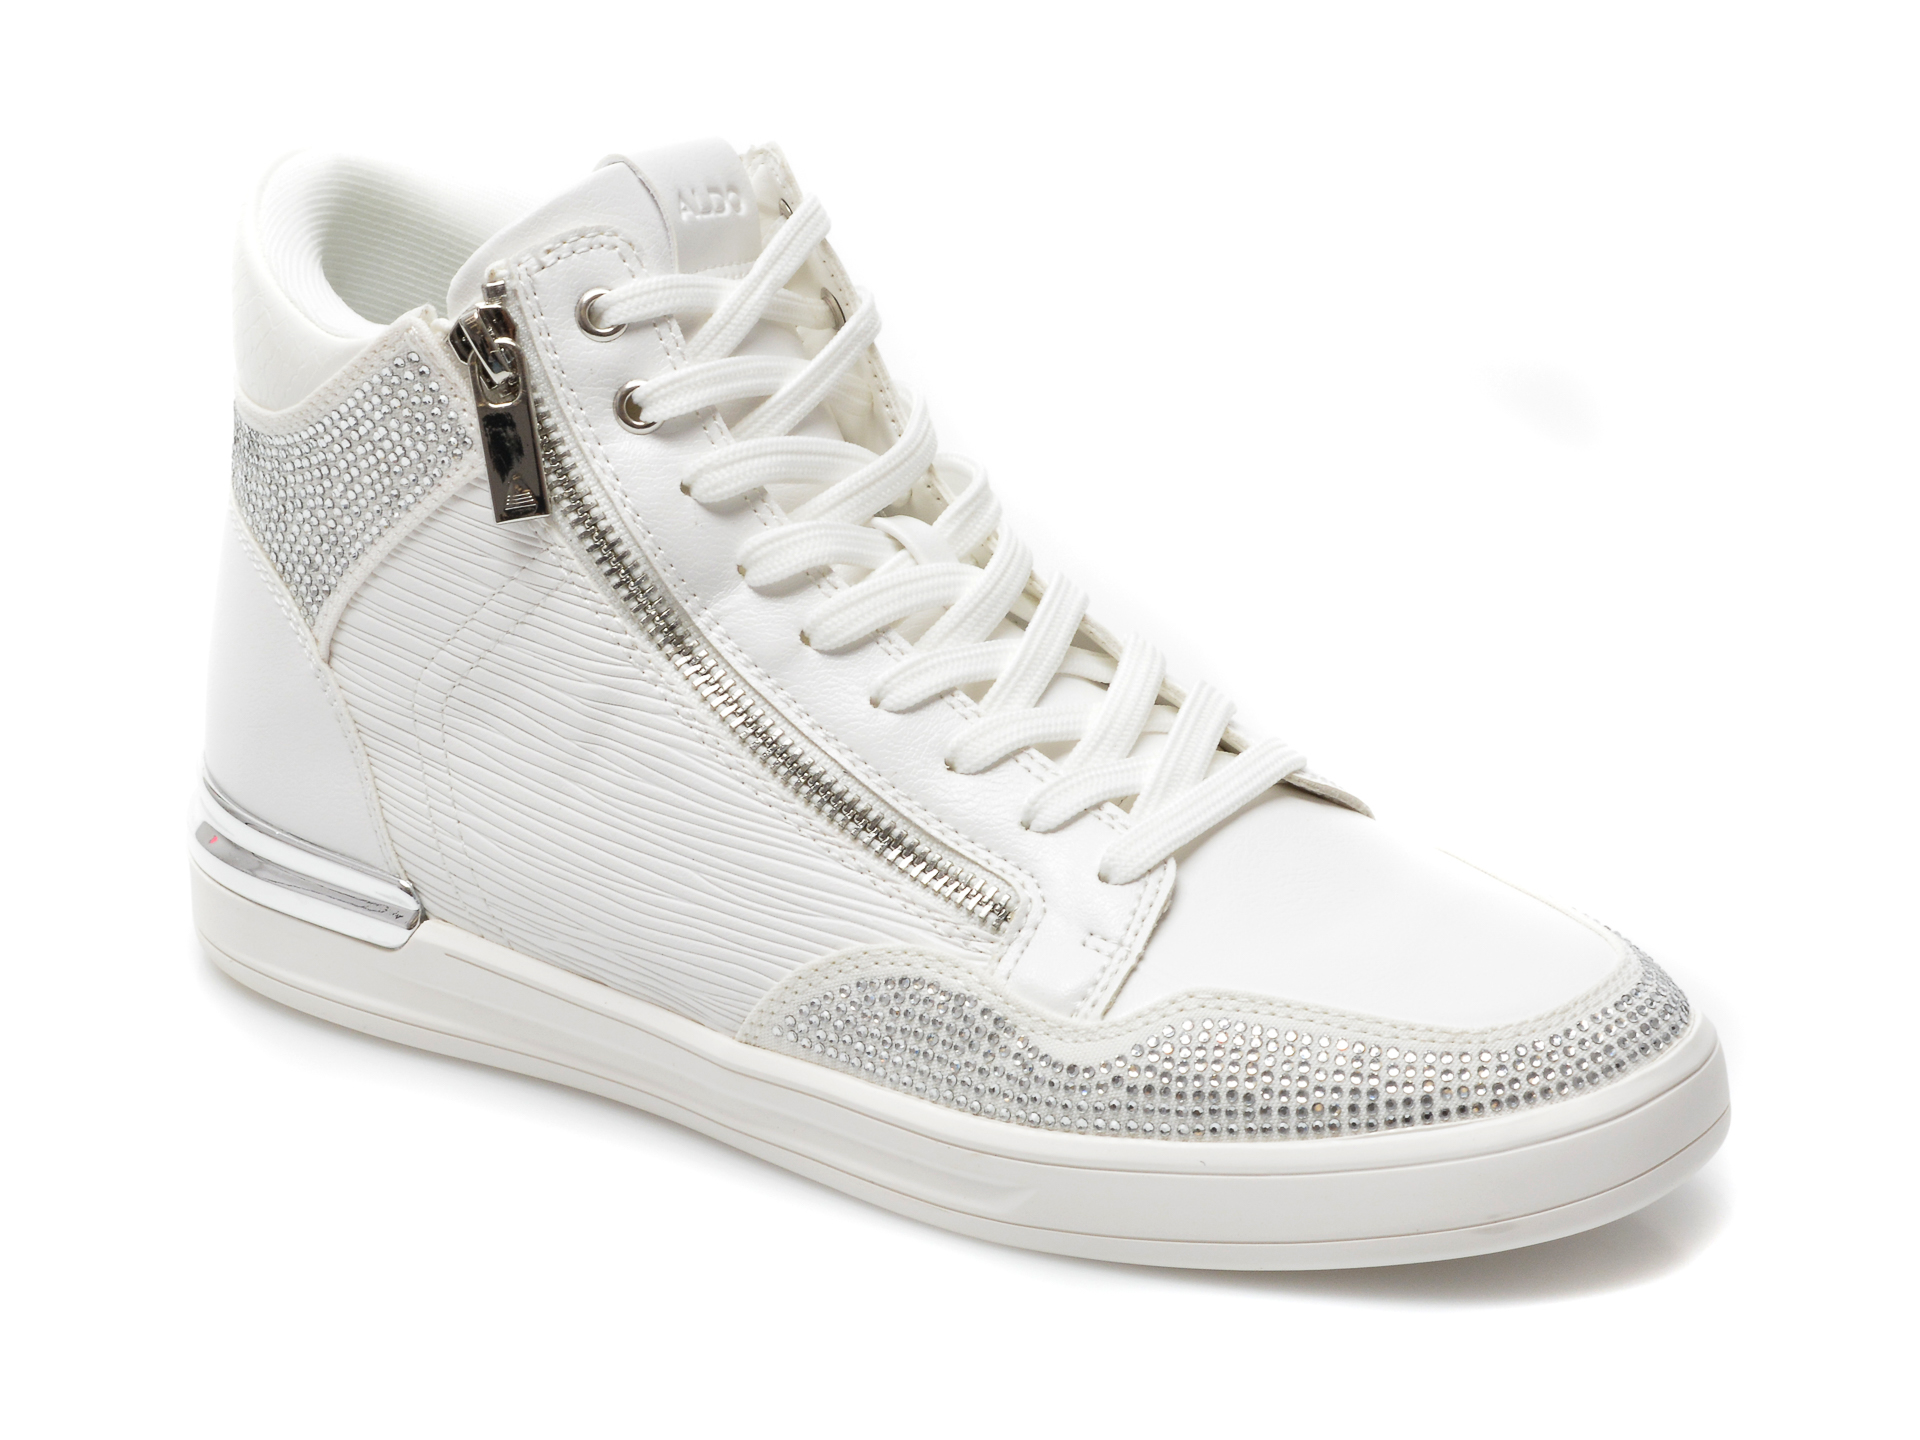 Pantofi ALDO albi, Sauerberg110, din piele ecologica Aldo